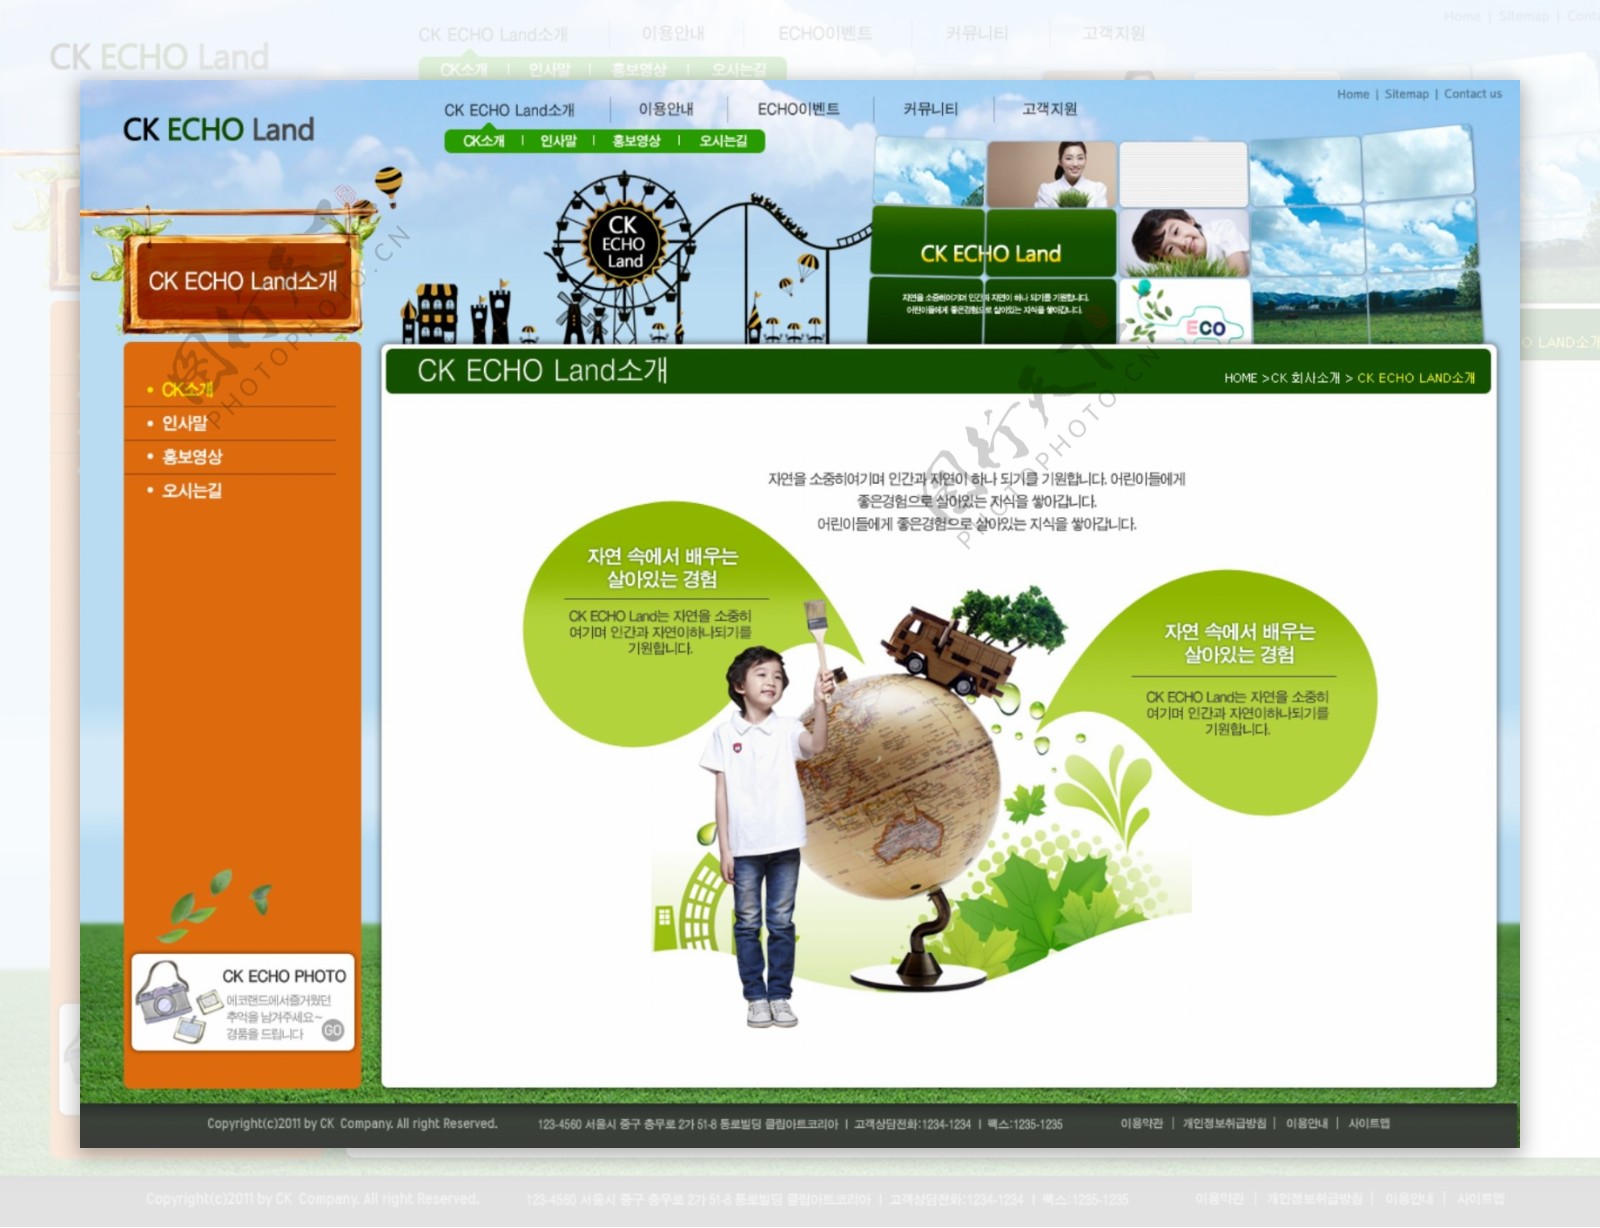 绿色地球网页psd模板